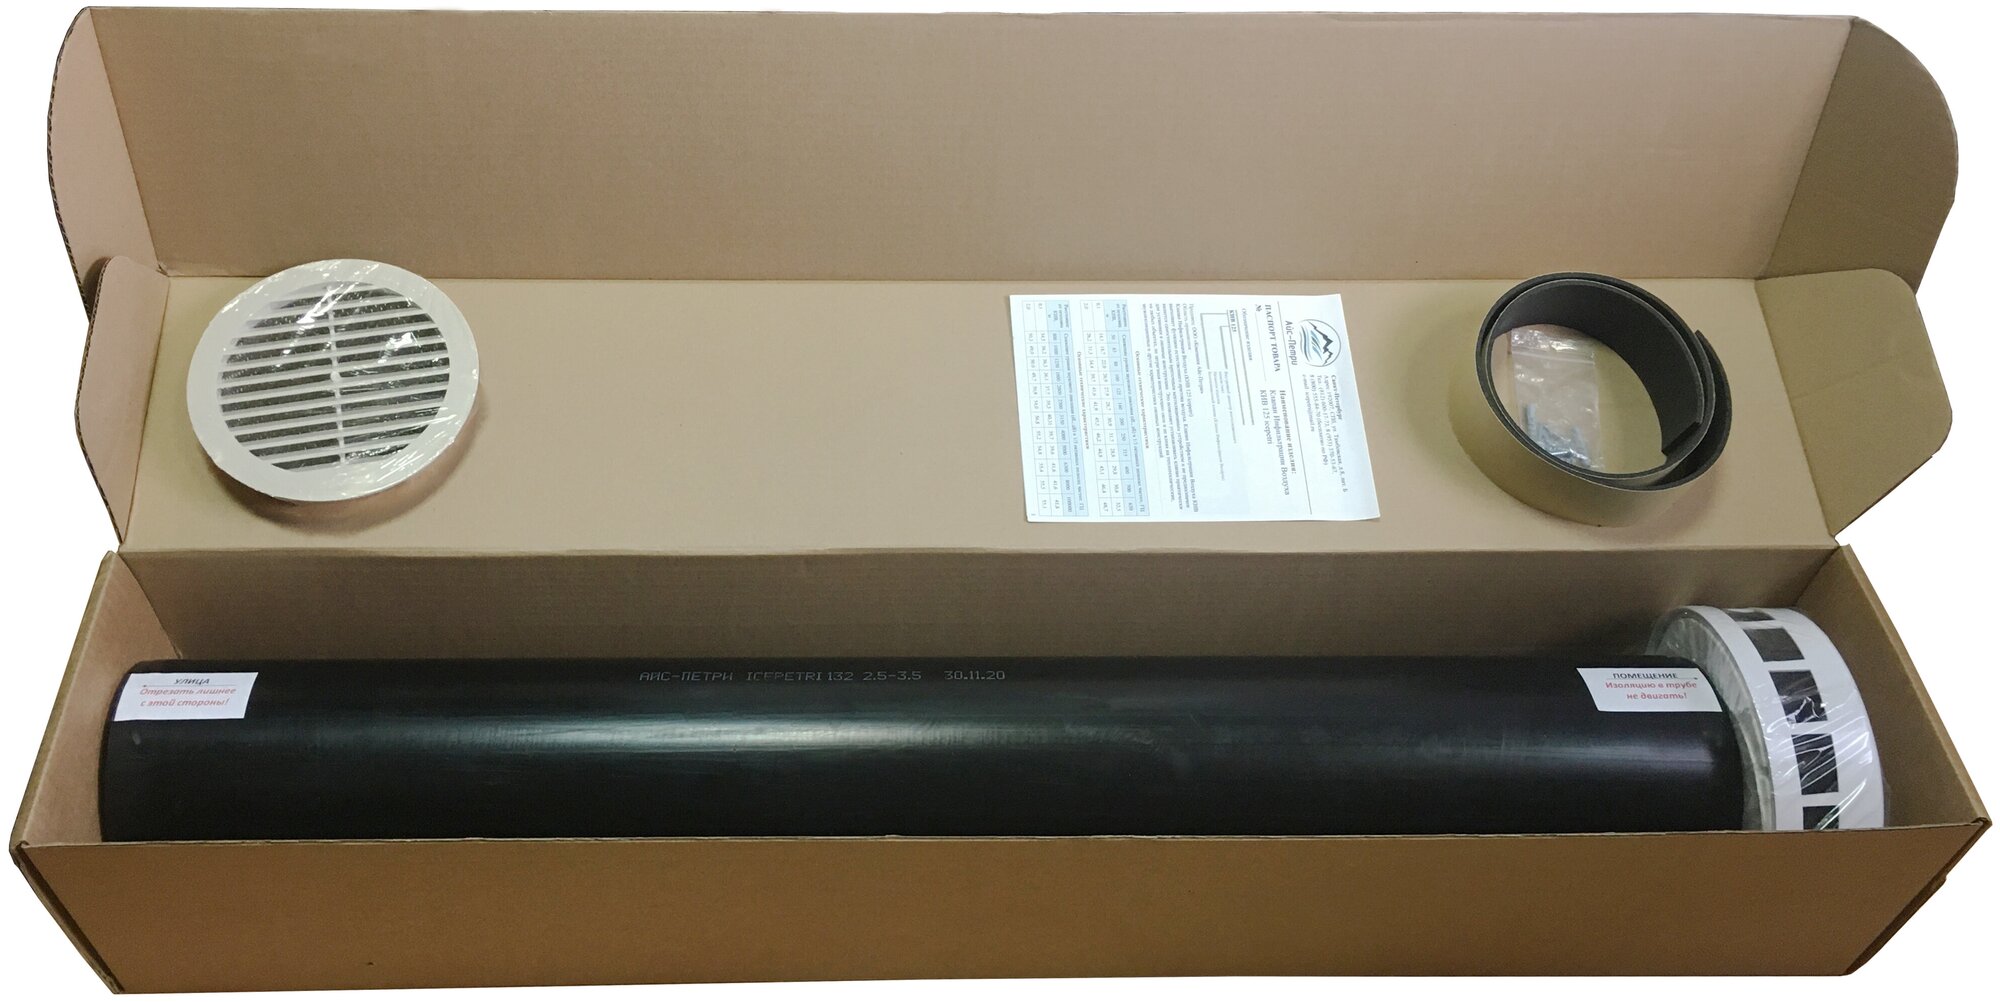 Приточный клапан КИВ-125 icepetri 900мм с к. базальтом и ivory ASA-пластиковой реш. в фирменной коробке